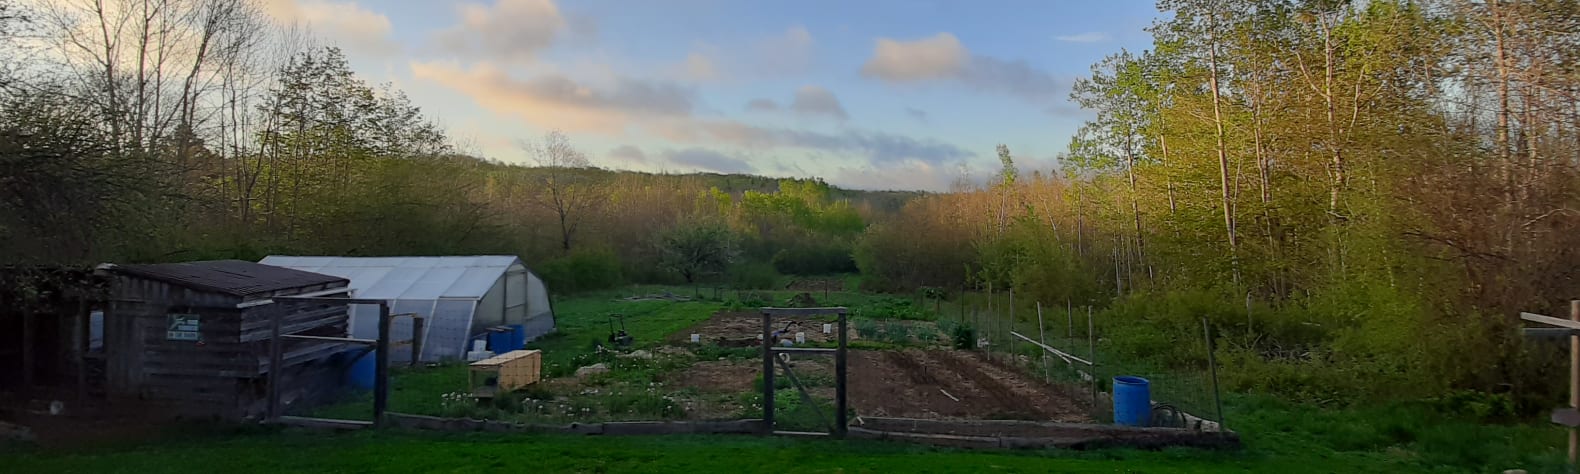 Sacred Garden Farm